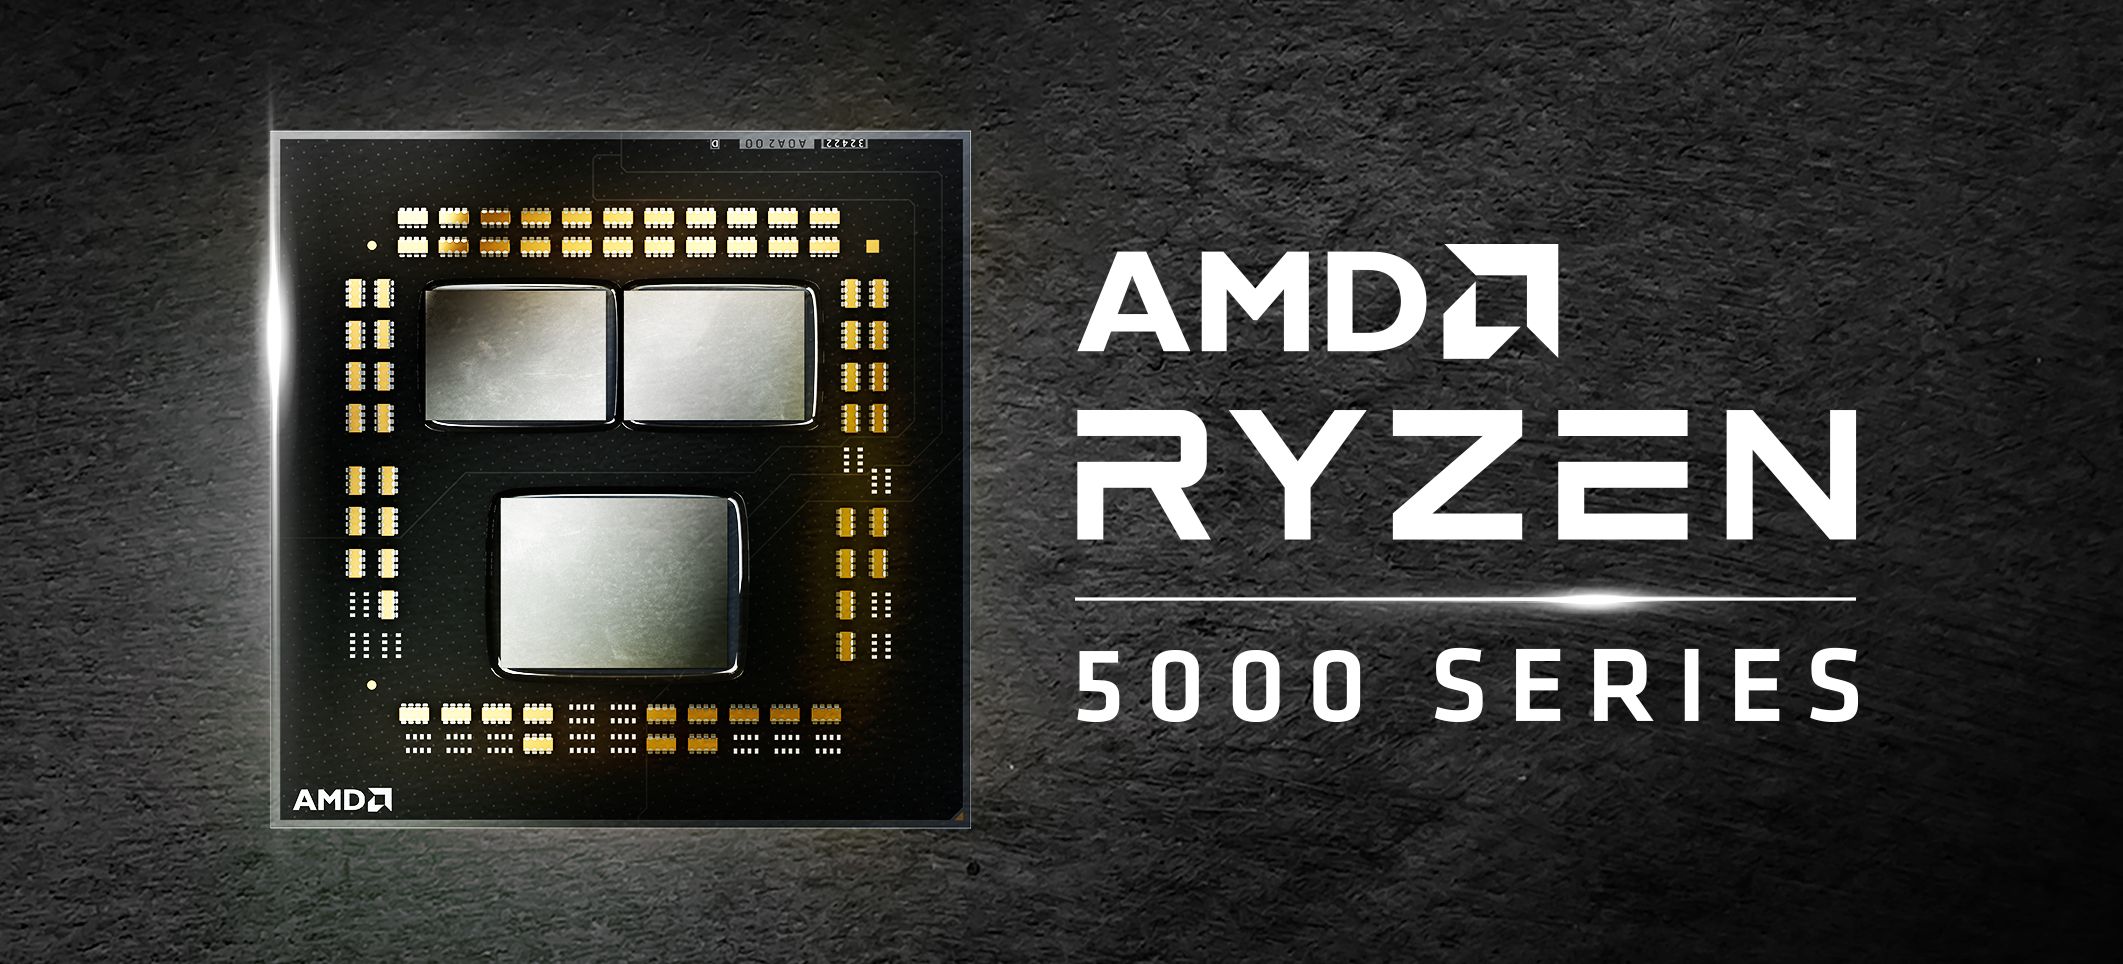 AMD Ryzen Desktop Processors for Creators